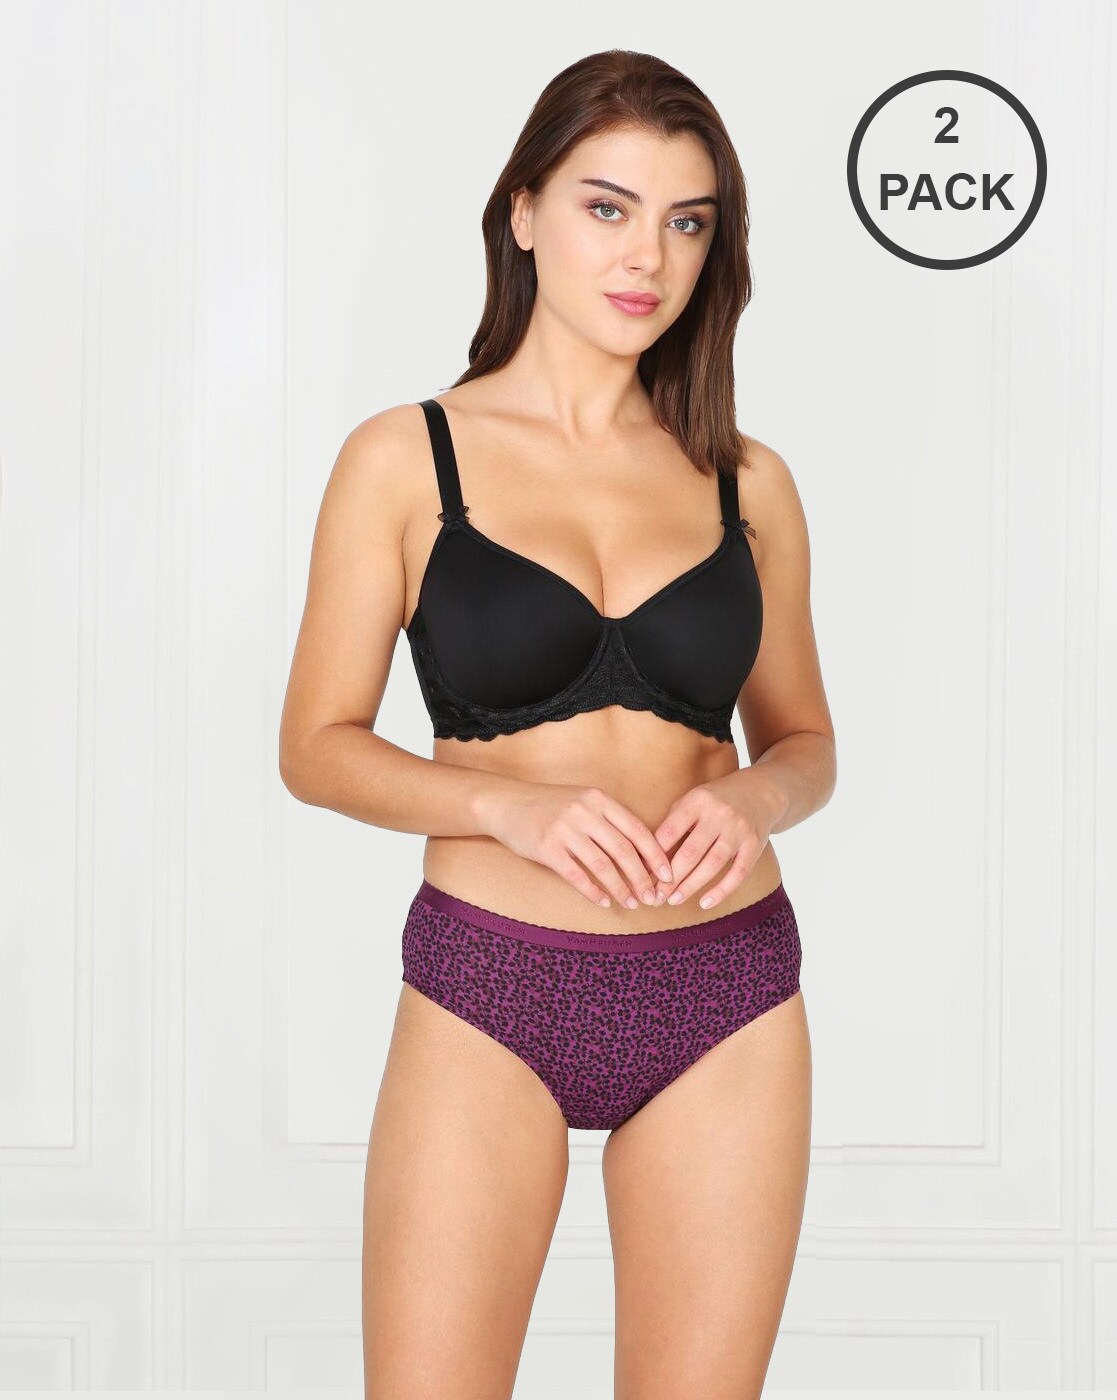 Buy Assorted Panties for Women by VAN HEUSEN Online